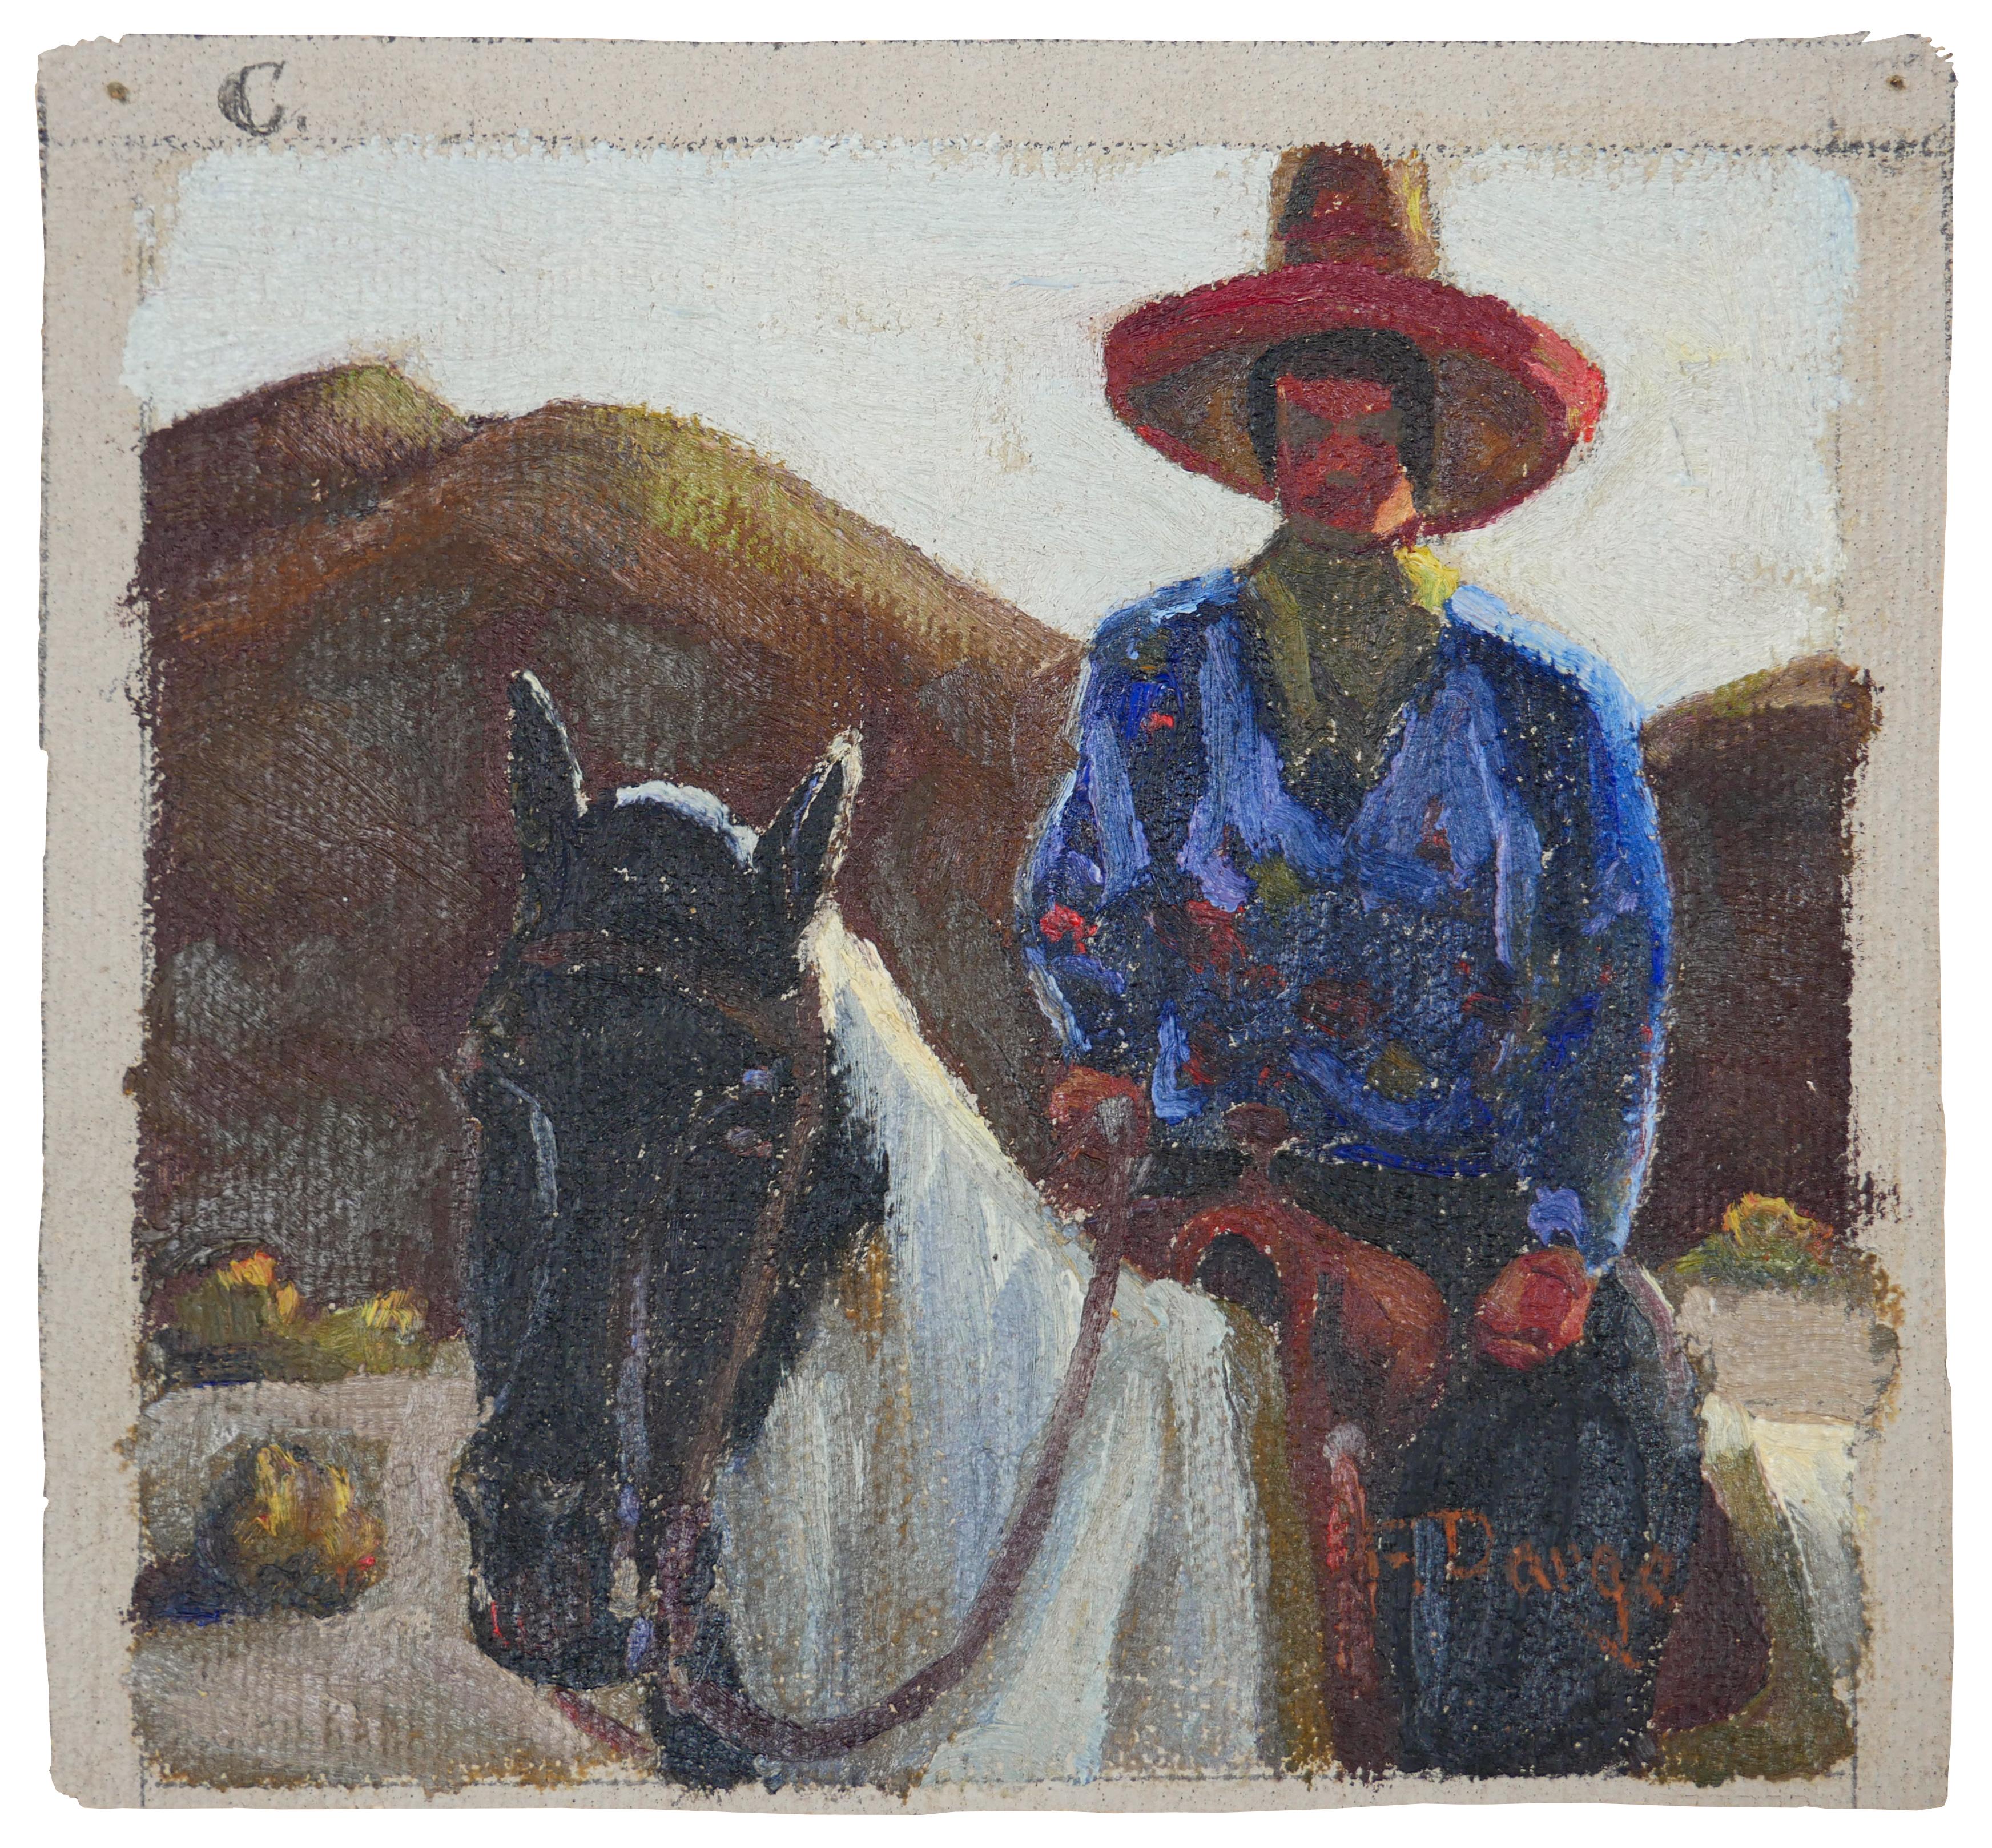 Abstrakt-impressionistisches Gemälde eines Cowboys auf einem Pferd in Blau, Rot und Braun